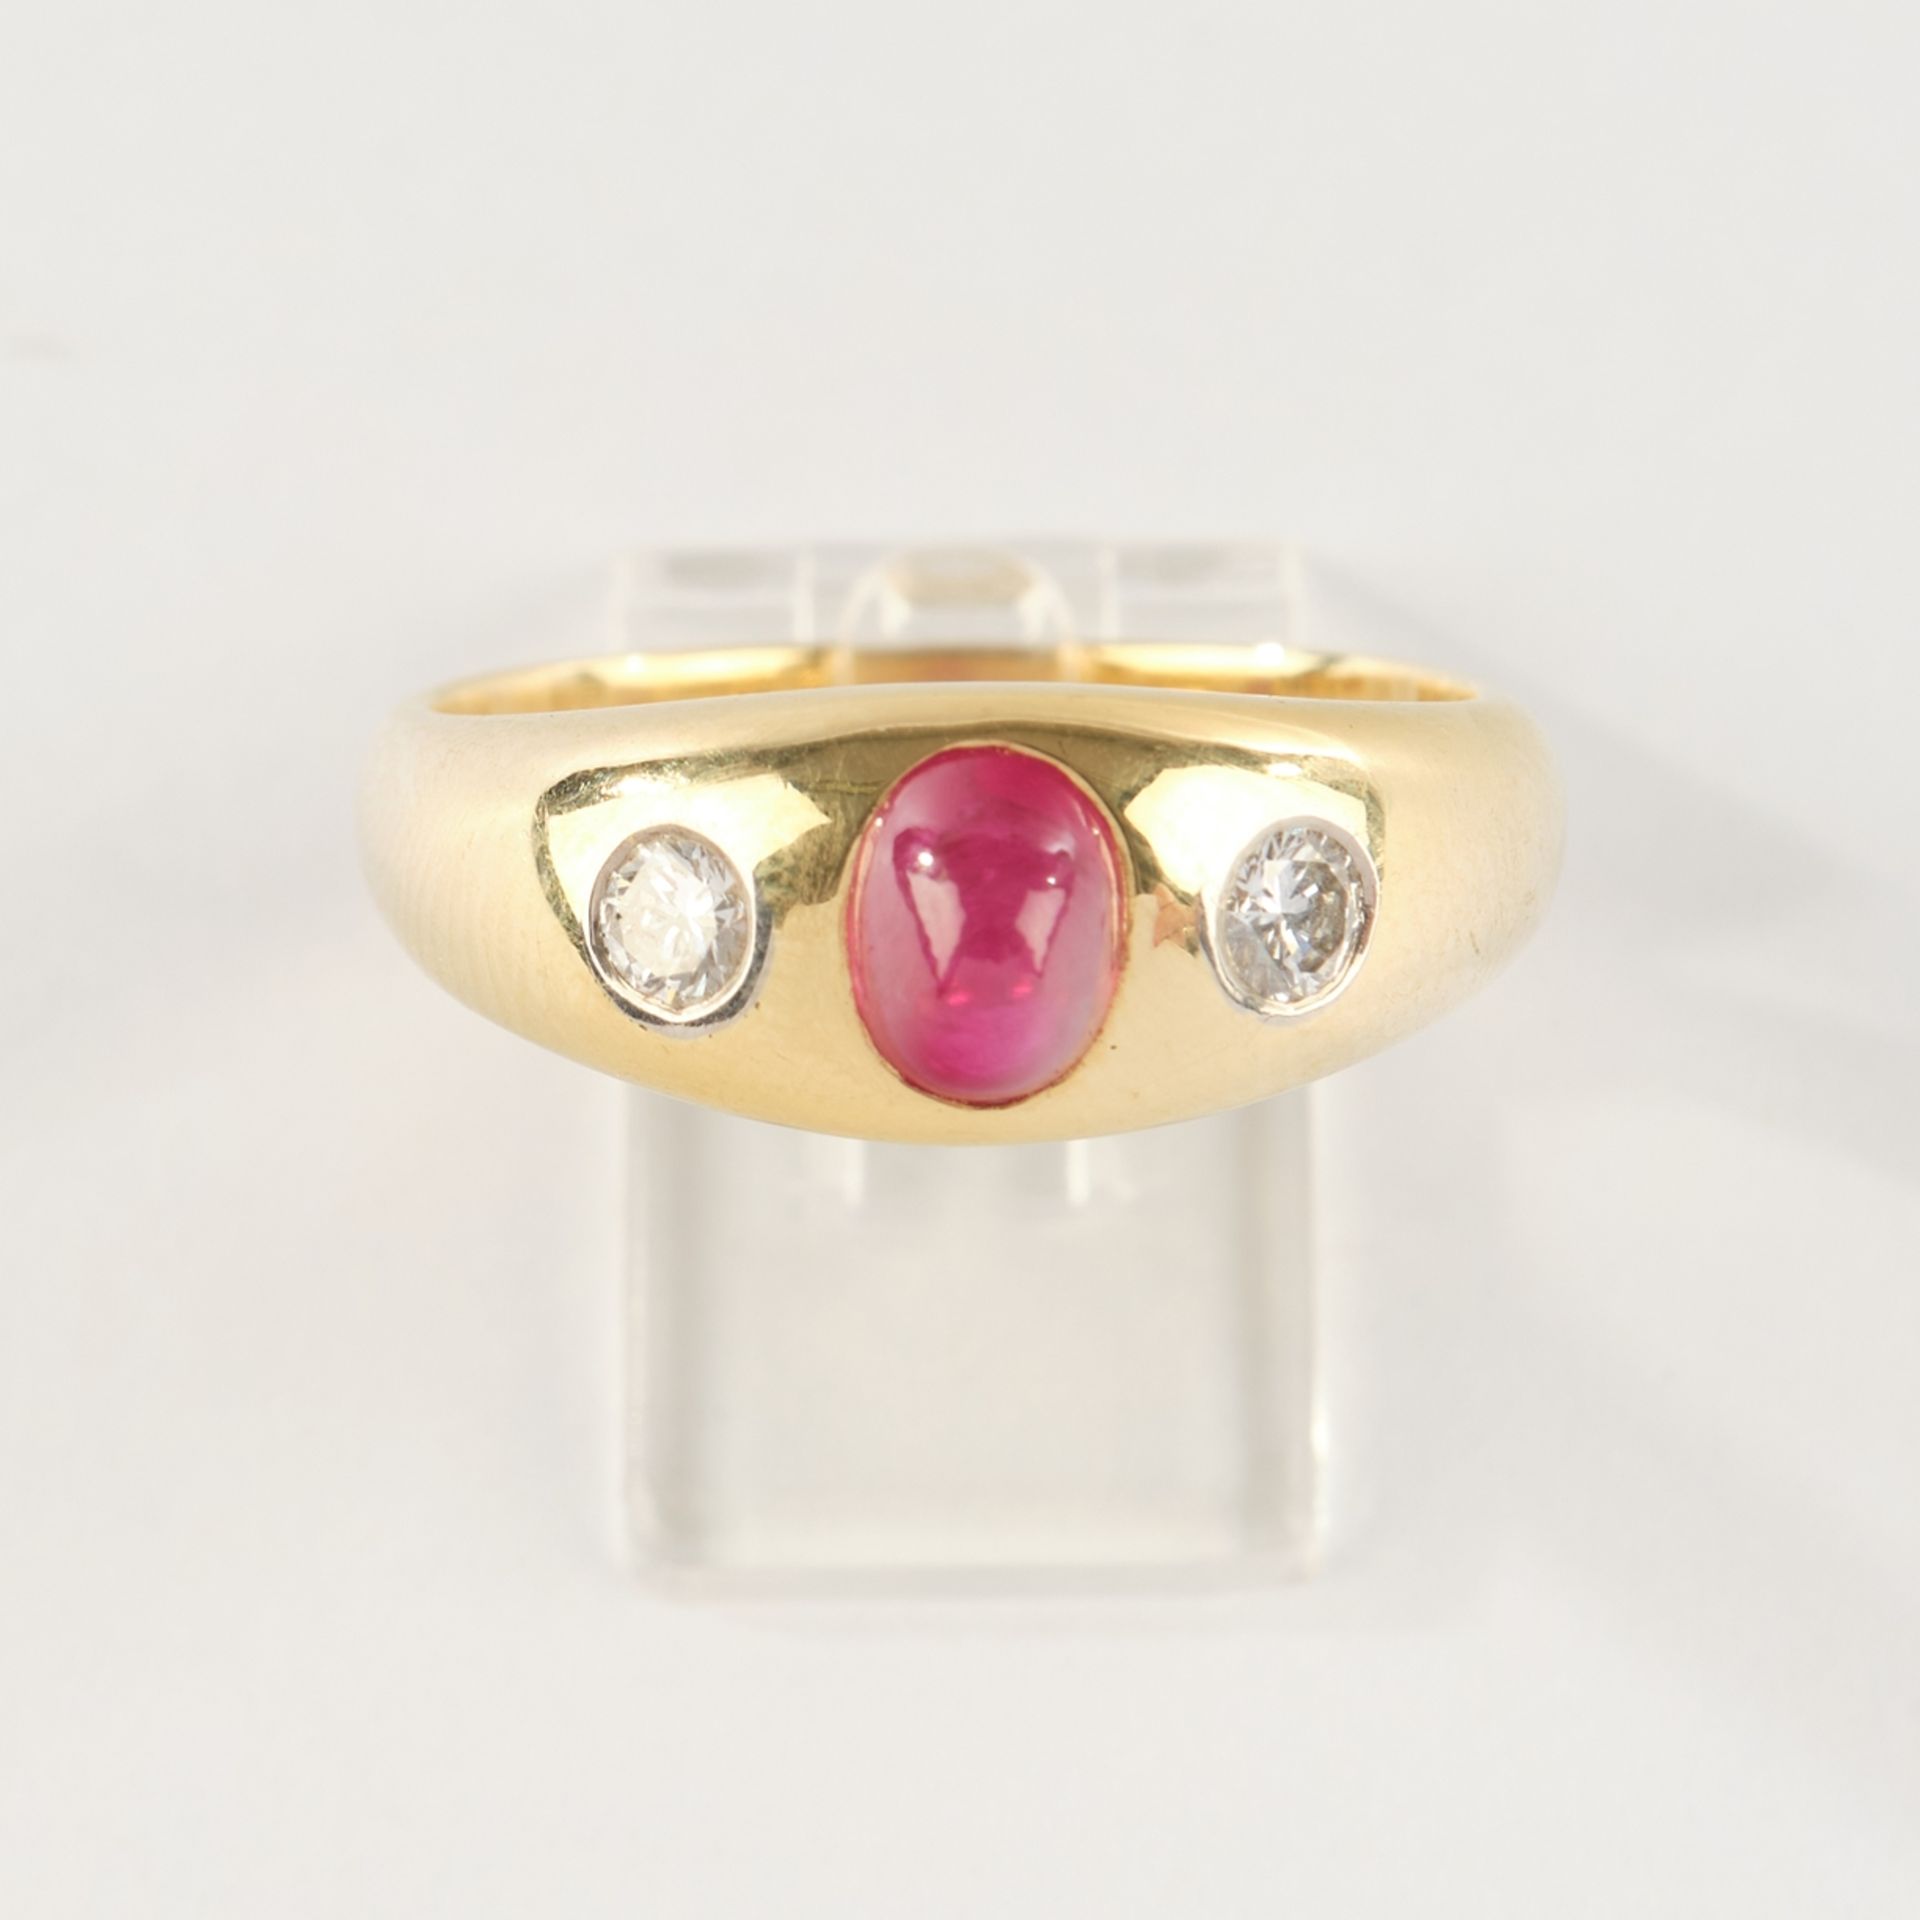 Ring, GG 750, Rubin-Cabochon, 2 Brillanten zus. ca. 0.20 ct., etwa tw,/if Juwelier Richarz, 6.88 g,